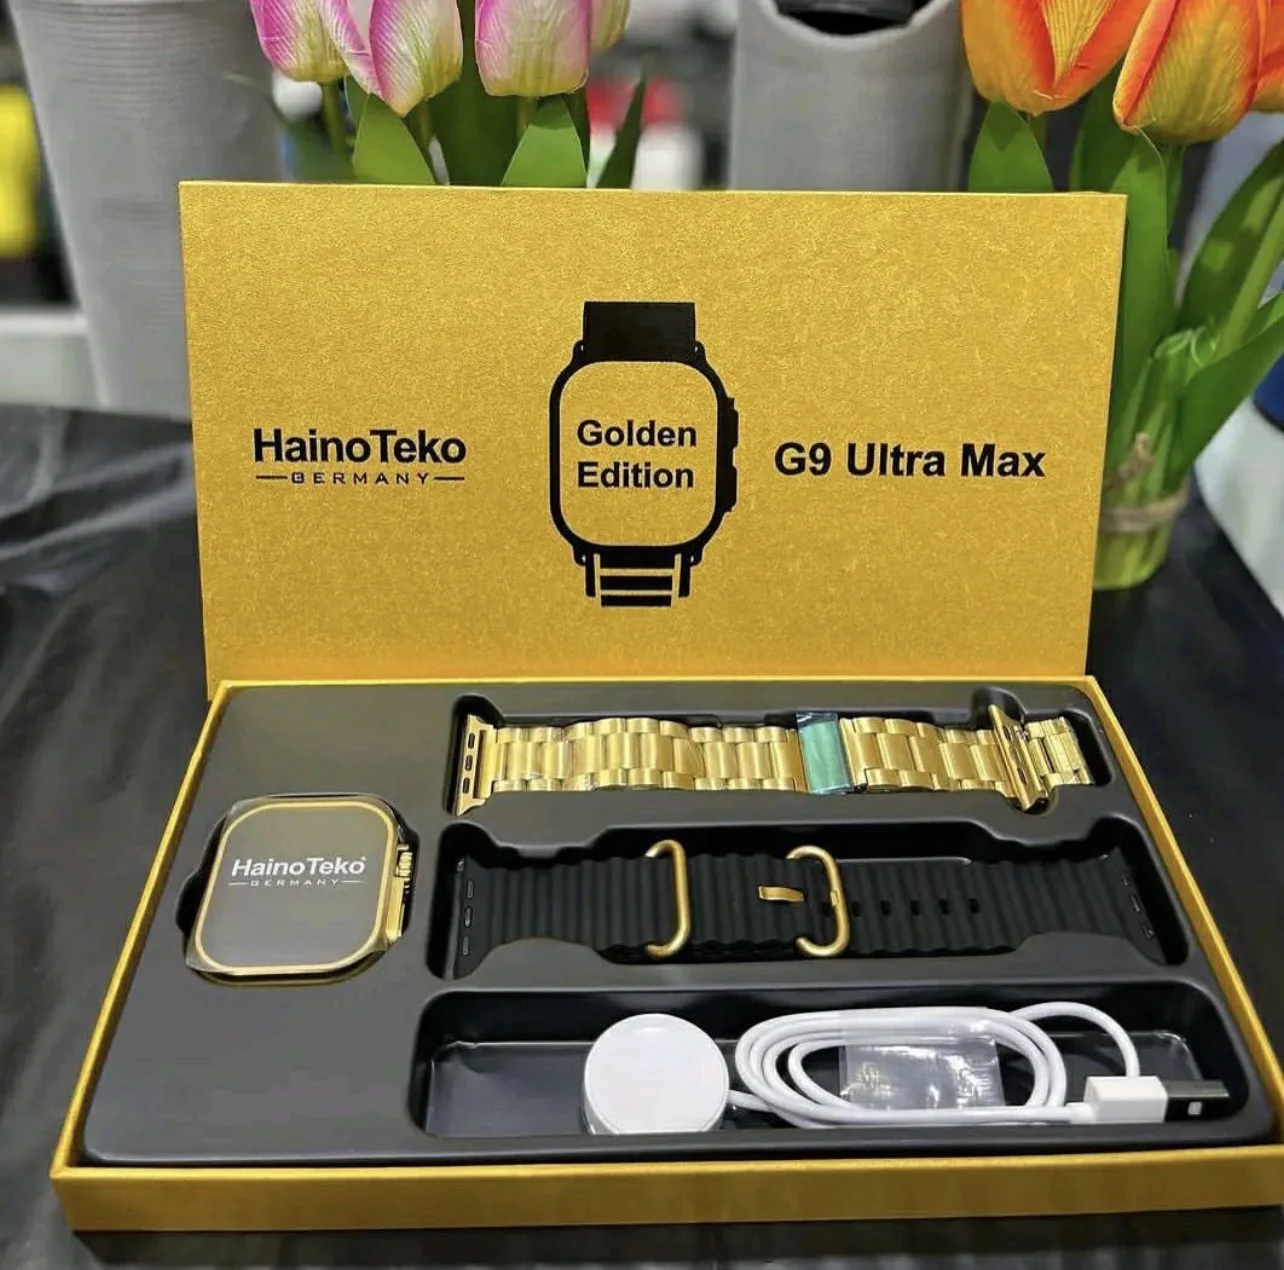 Haino Teko G9 Ultra Max Smart Watch